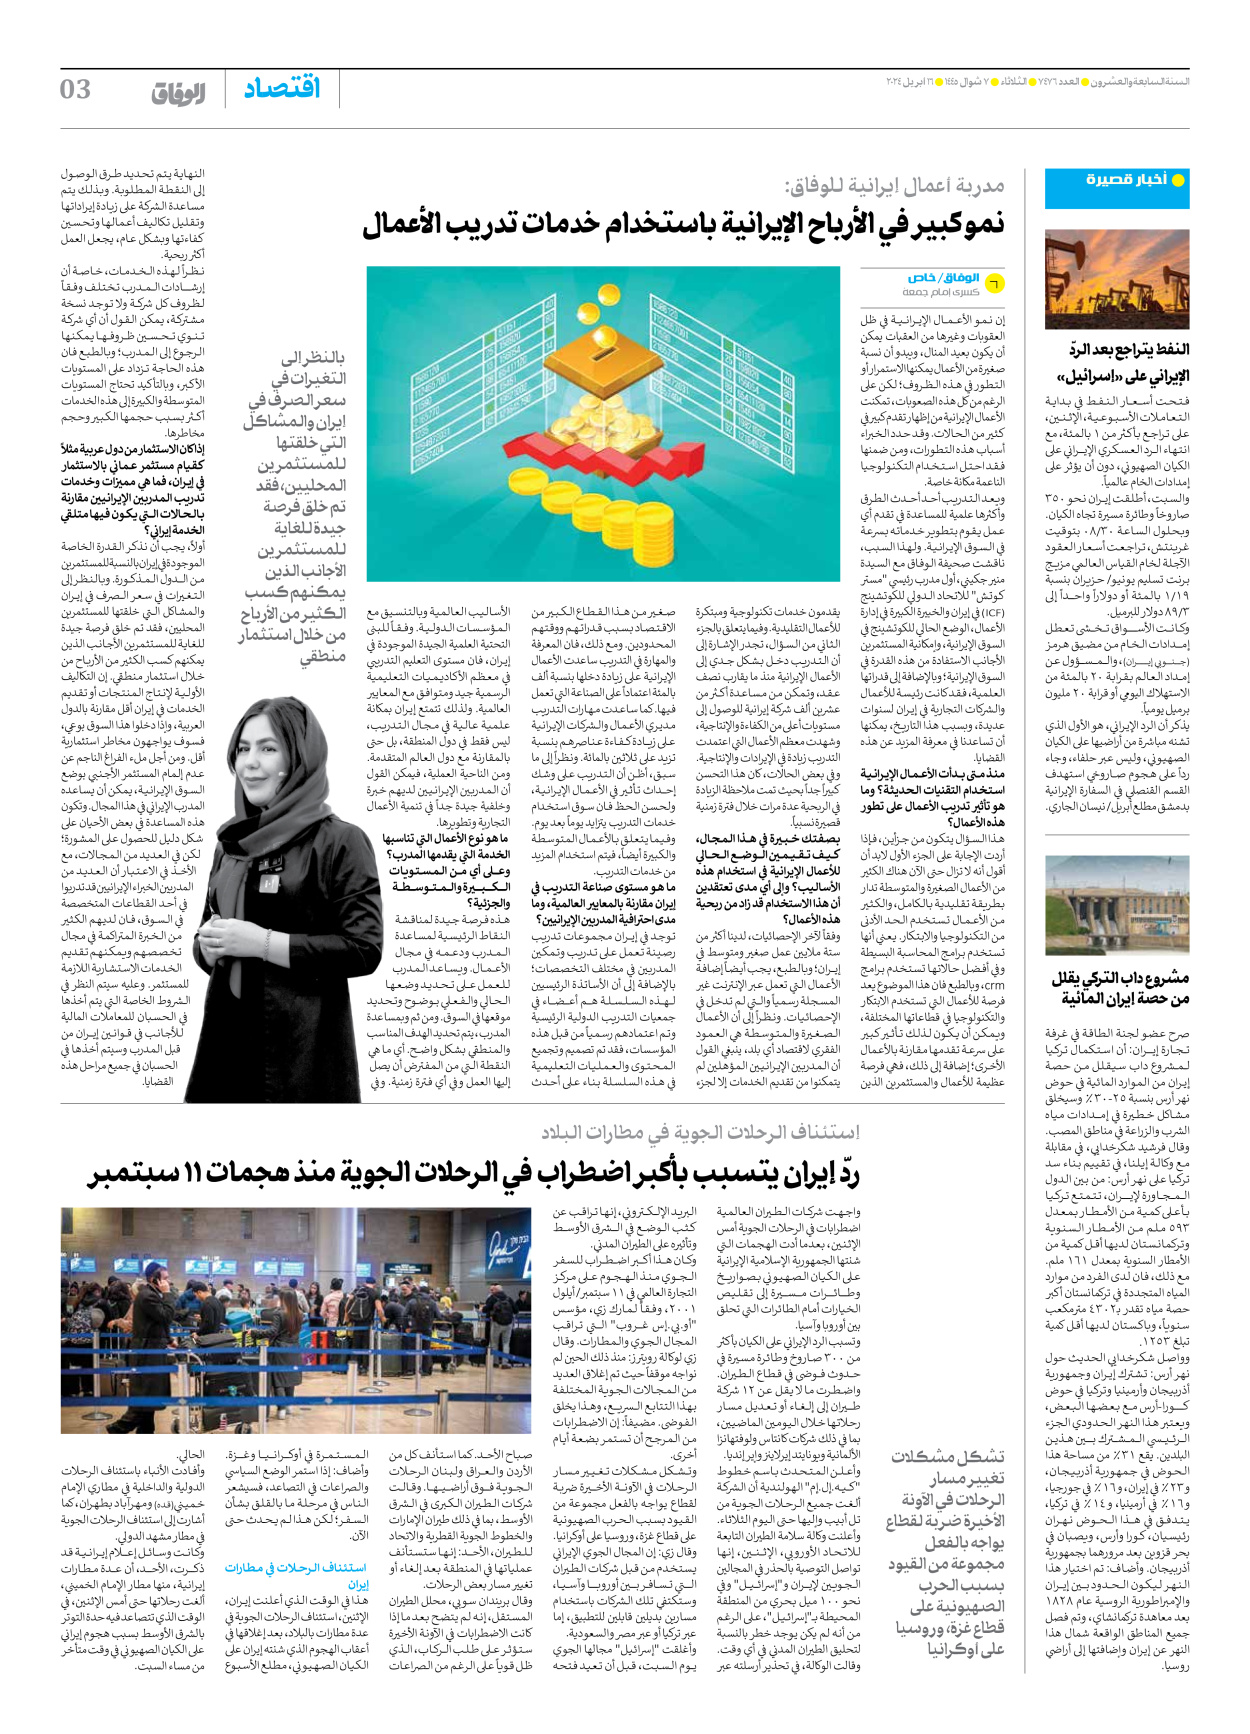 صحیفة ایران الدولیة الوفاق - العدد سبعة آلاف وأربعمائة وستة وسبعون - ١٦ أبريل ٢٠٢٤ - الصفحة ۳